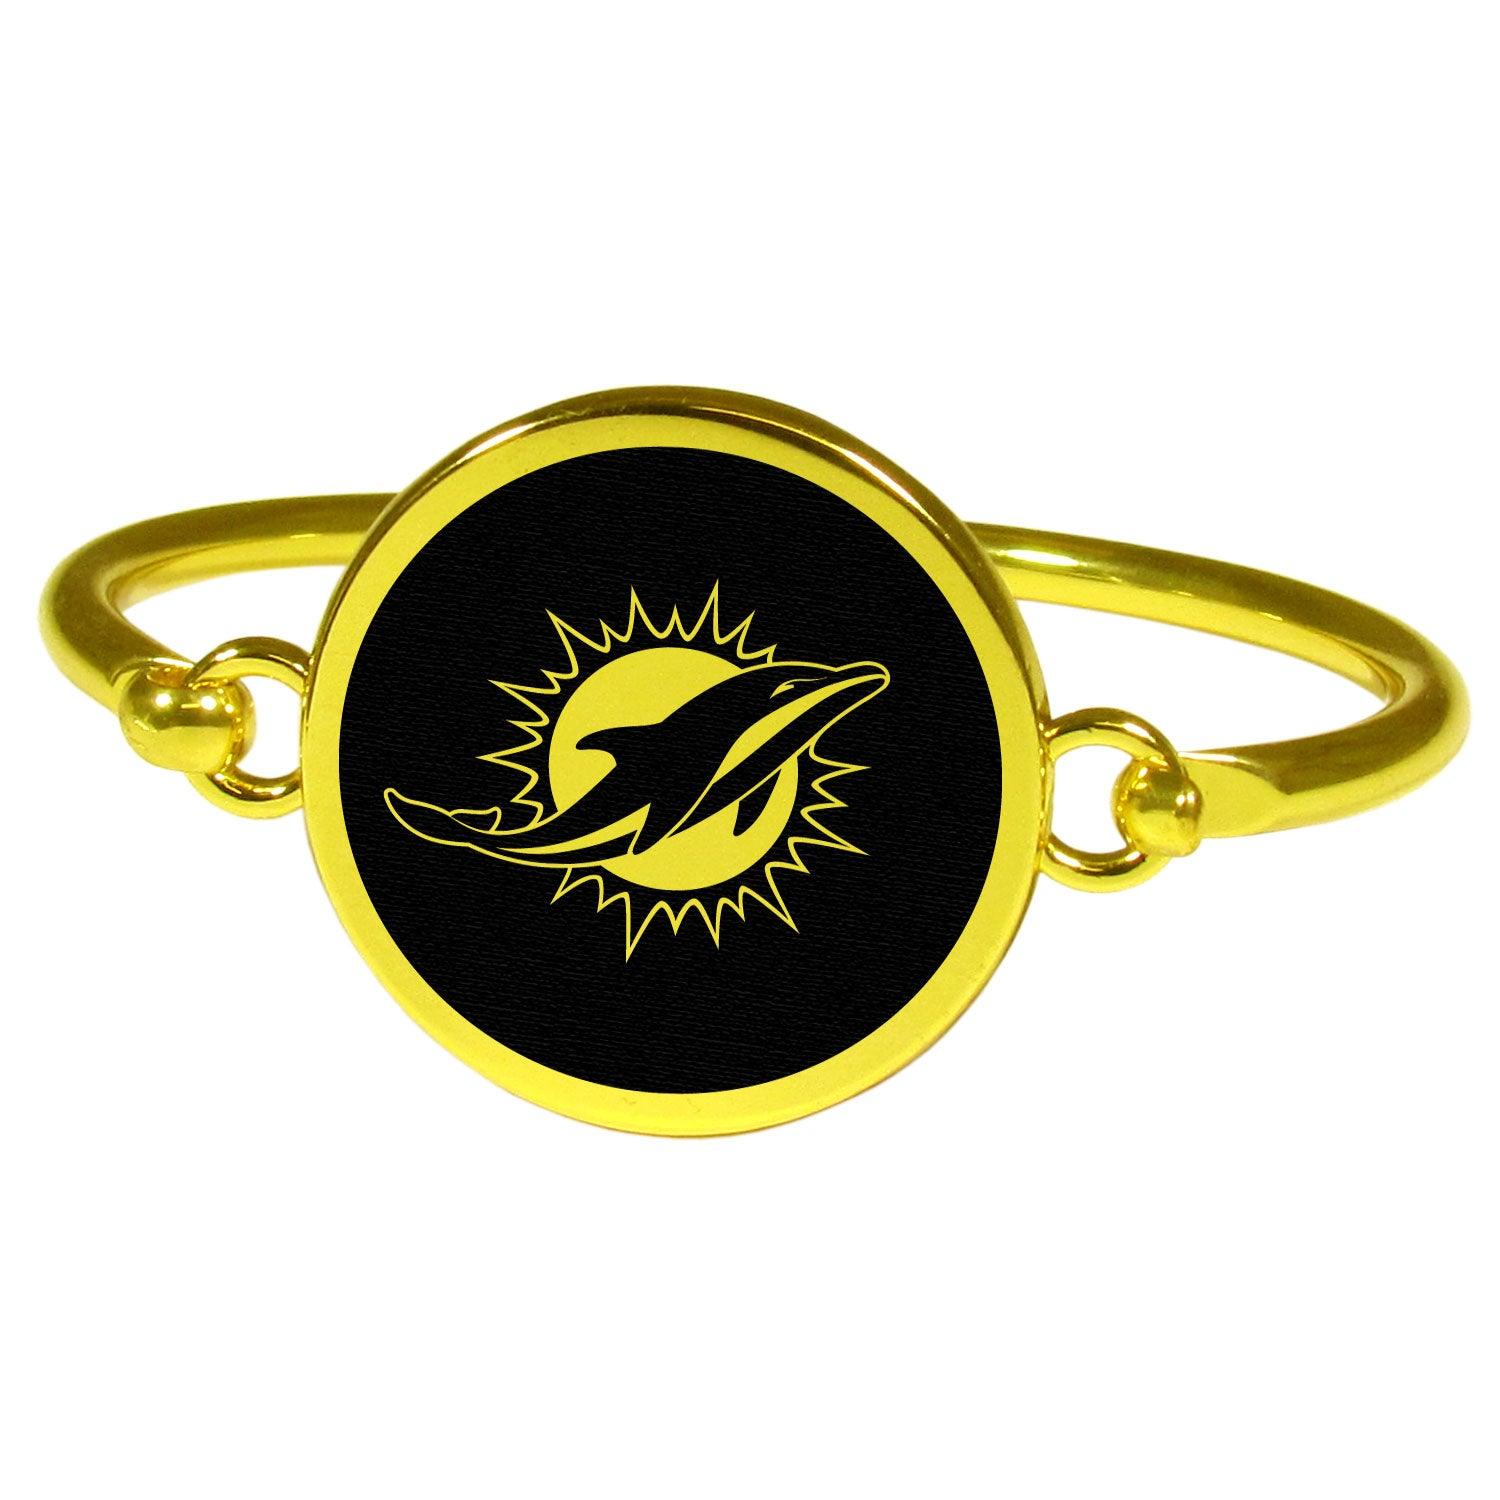 Miami Dolphins Gold Tone Bangle Bracelet - Flyclothing LLC